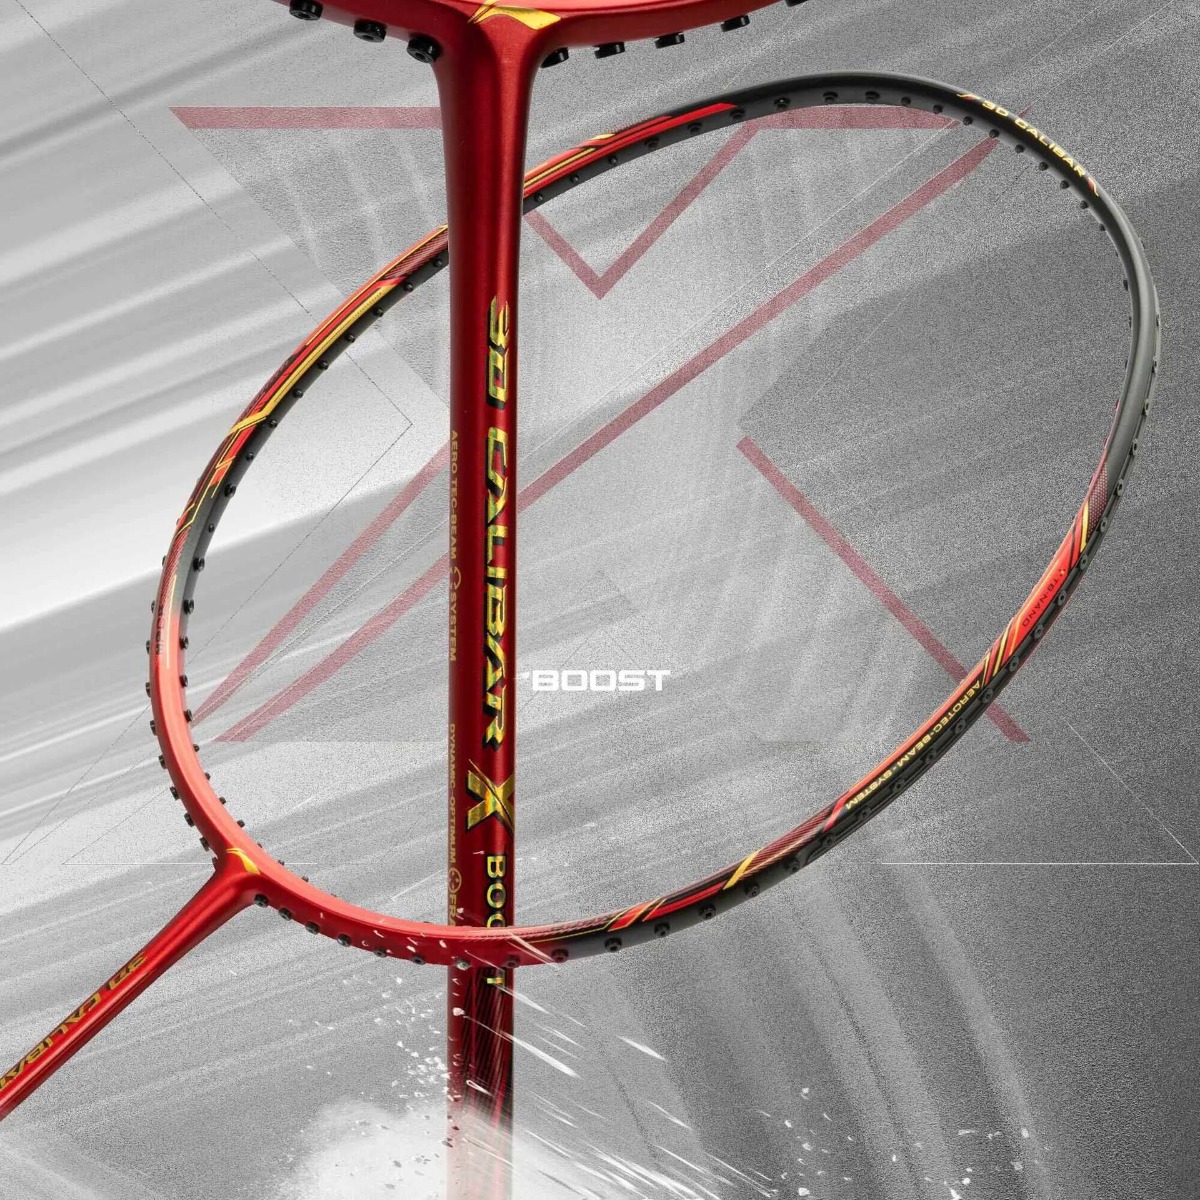 Li-Ning 3D Calibar X Drive Badminton Racket Features MPCF Reinforcing Technology